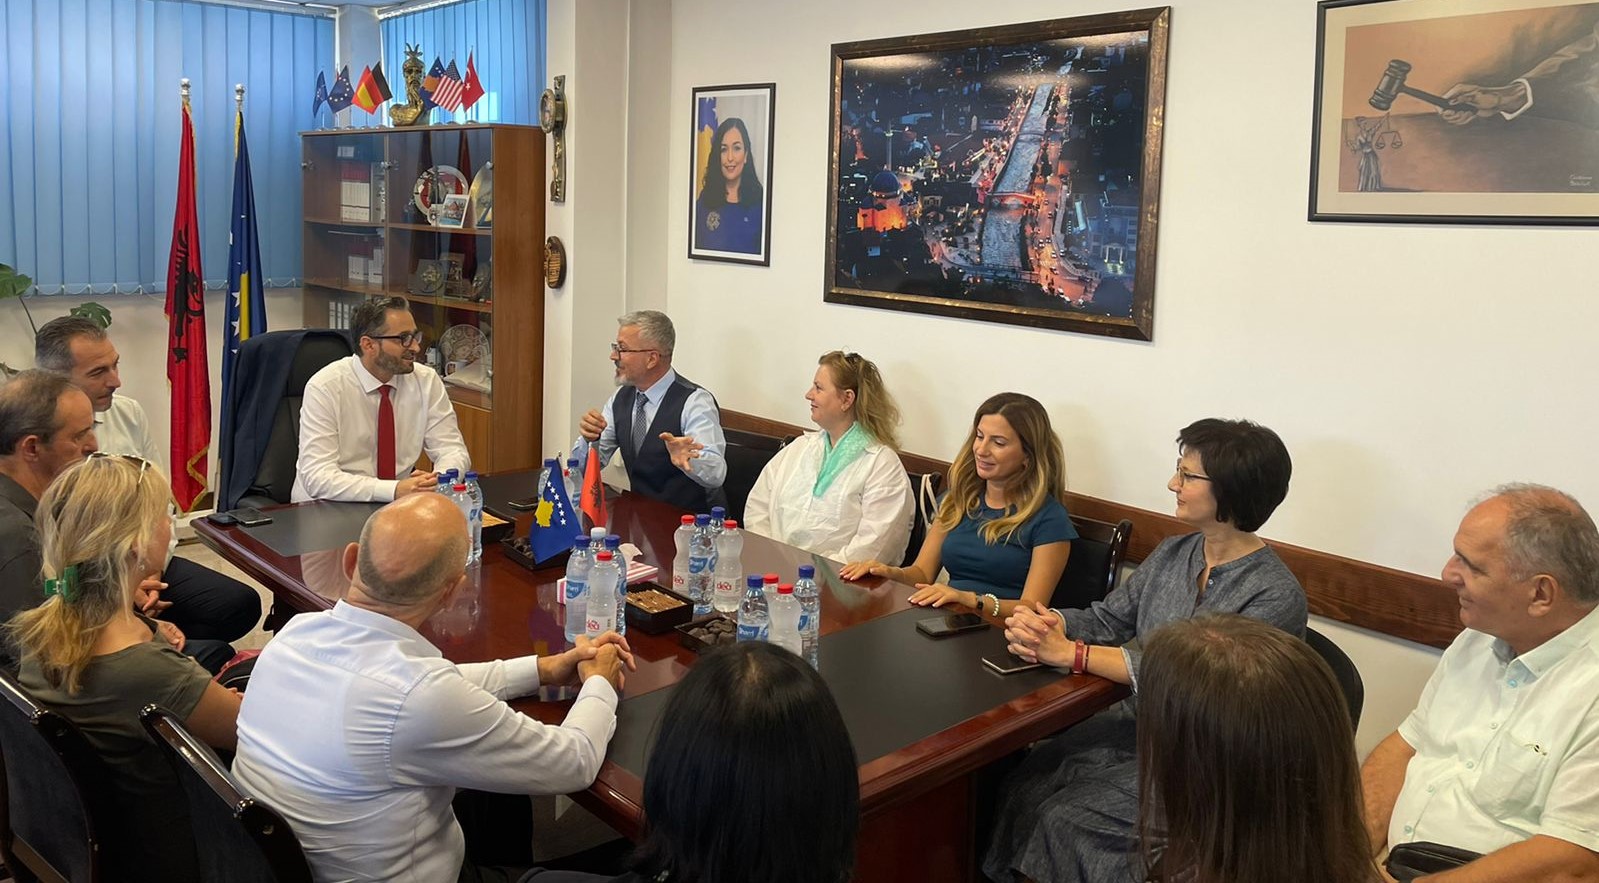 Kryeprokurori i Prizrenit priti në takim përfaqësues nga Këshilli i Lartë i Prokurorisë së Shqipërisë